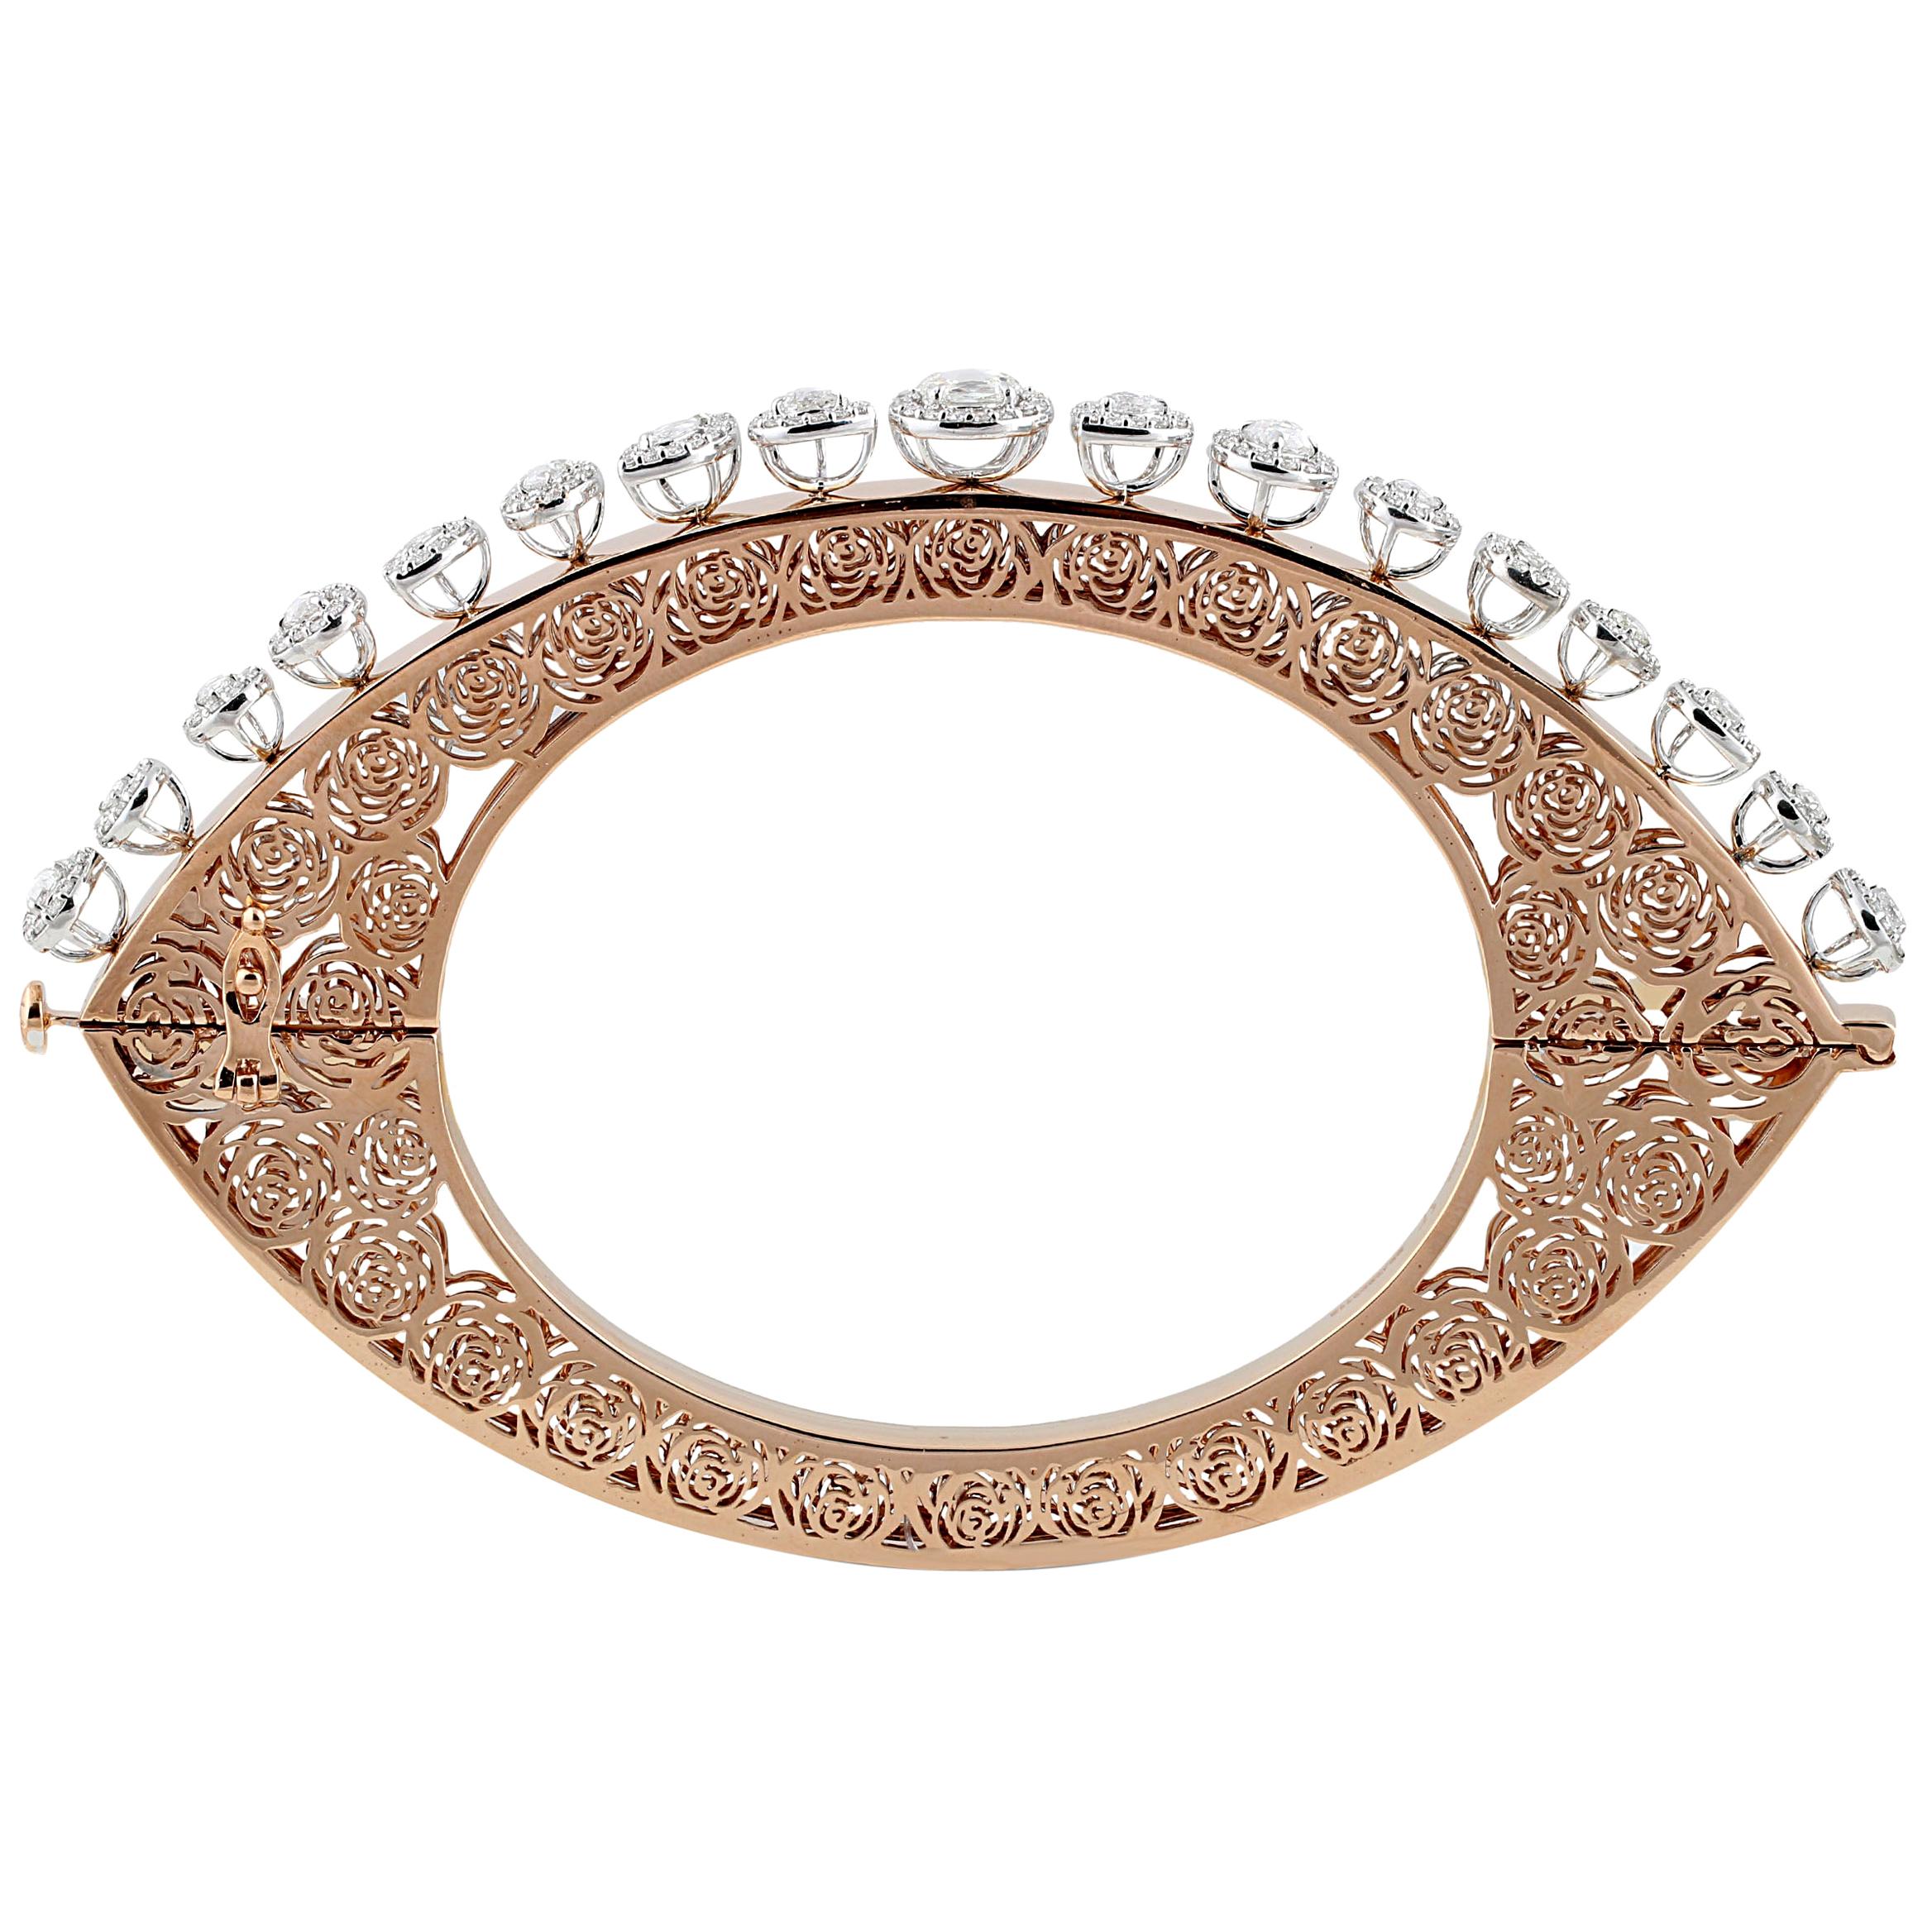 Studio Rêves Diamonds and Filigree Bracelet in 18 Karat Gold For Sale